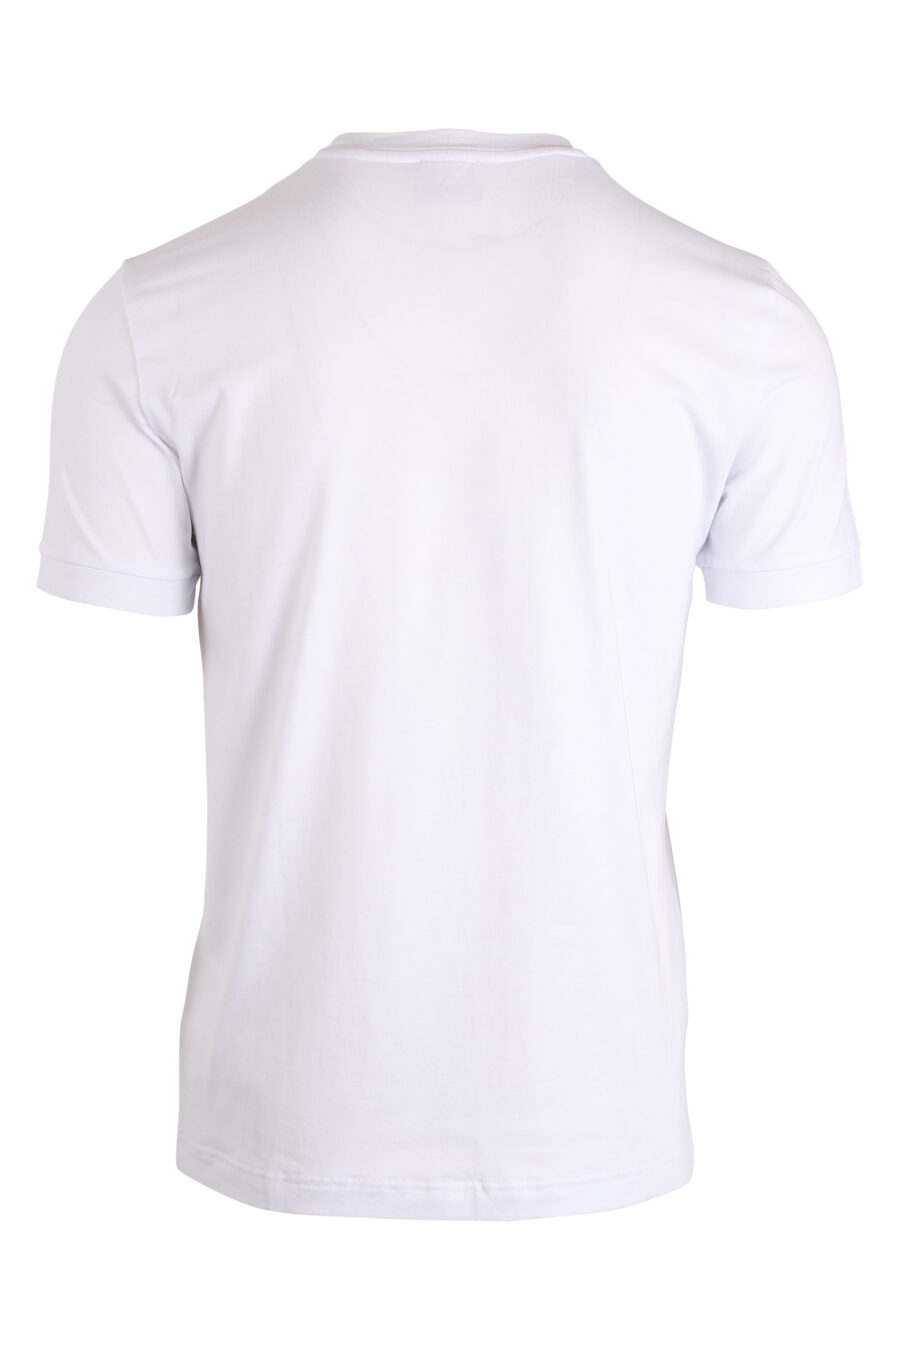 T-shirt blanc avec le logo "lux identity" en grille - IMG 4216